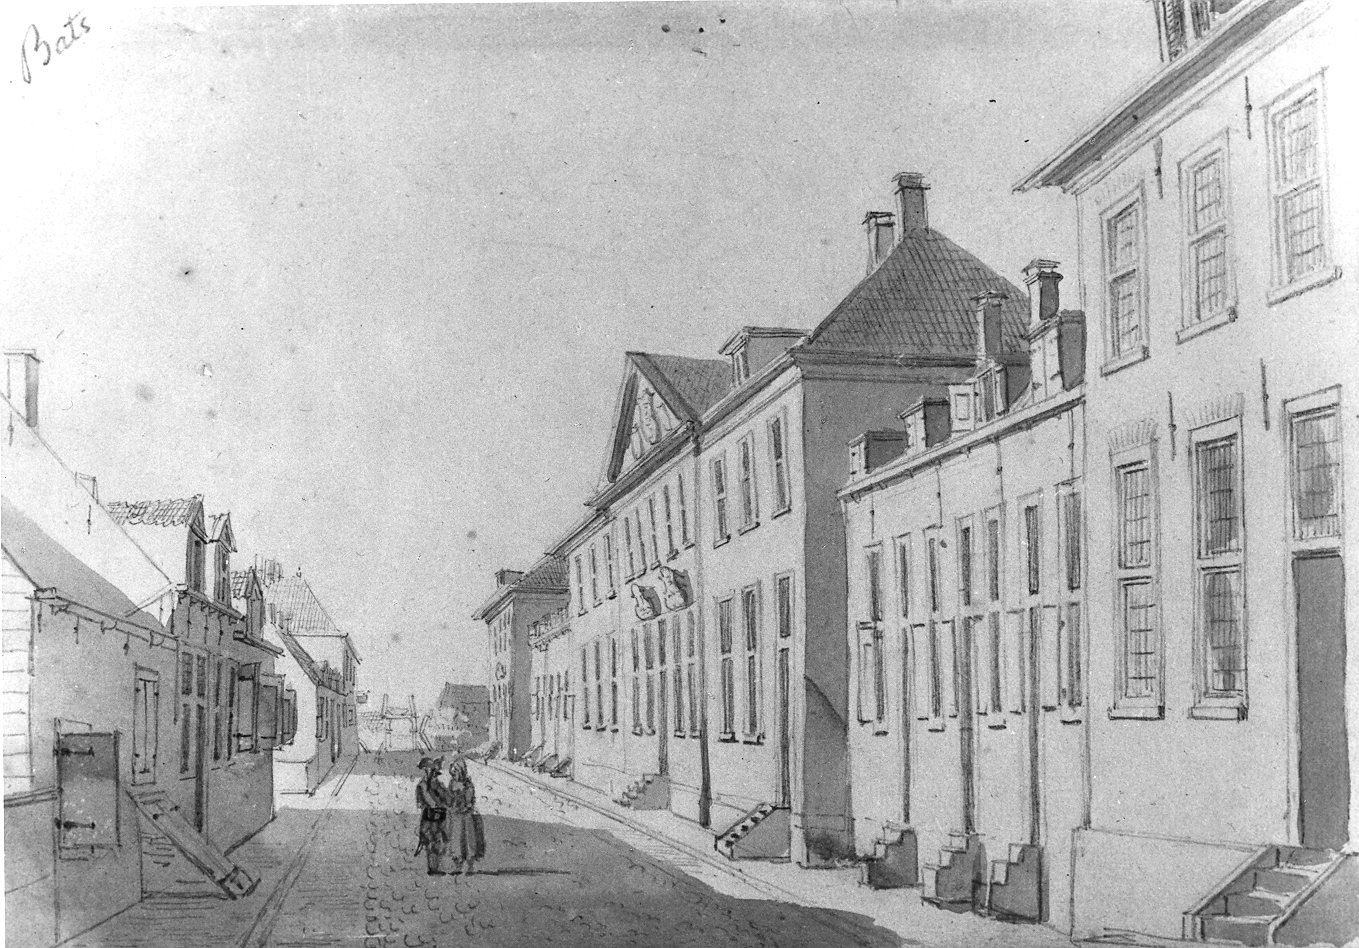 Straat in het dorp Bath, eind 18e eeuw.